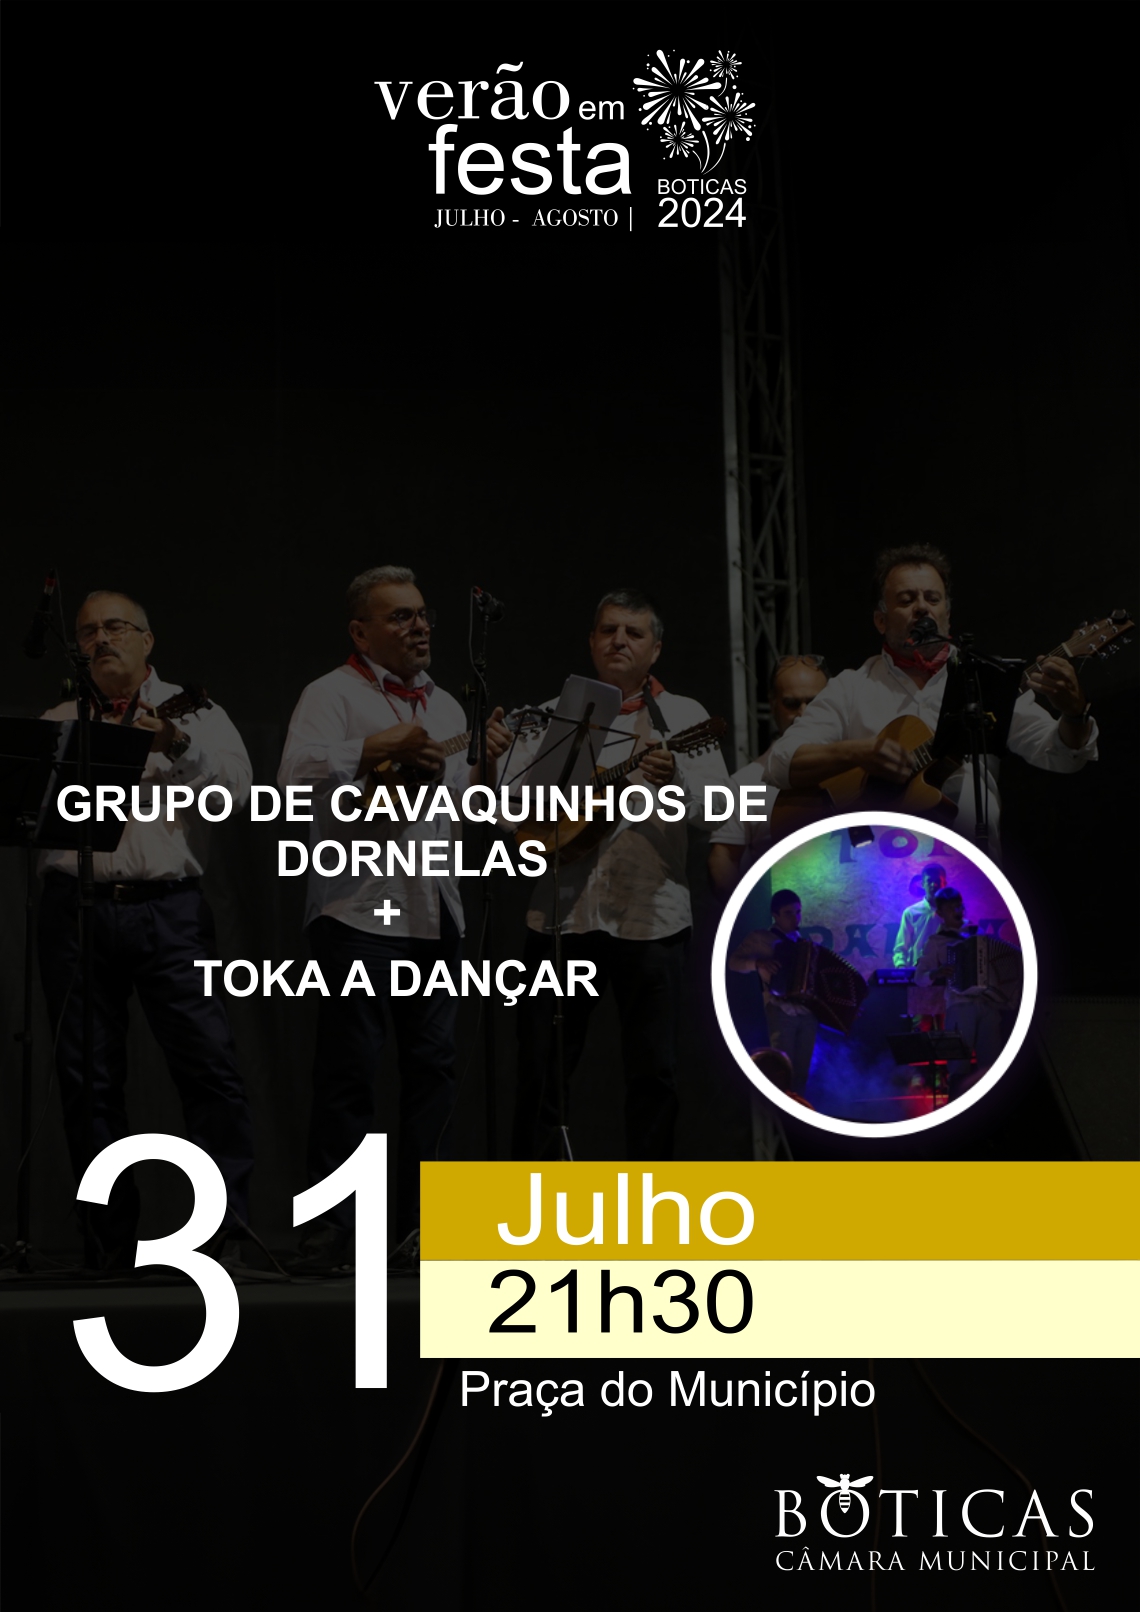 Grupo de Cavaquinhos de Dornelas + Toka a Danar | Vero em Festa 2024